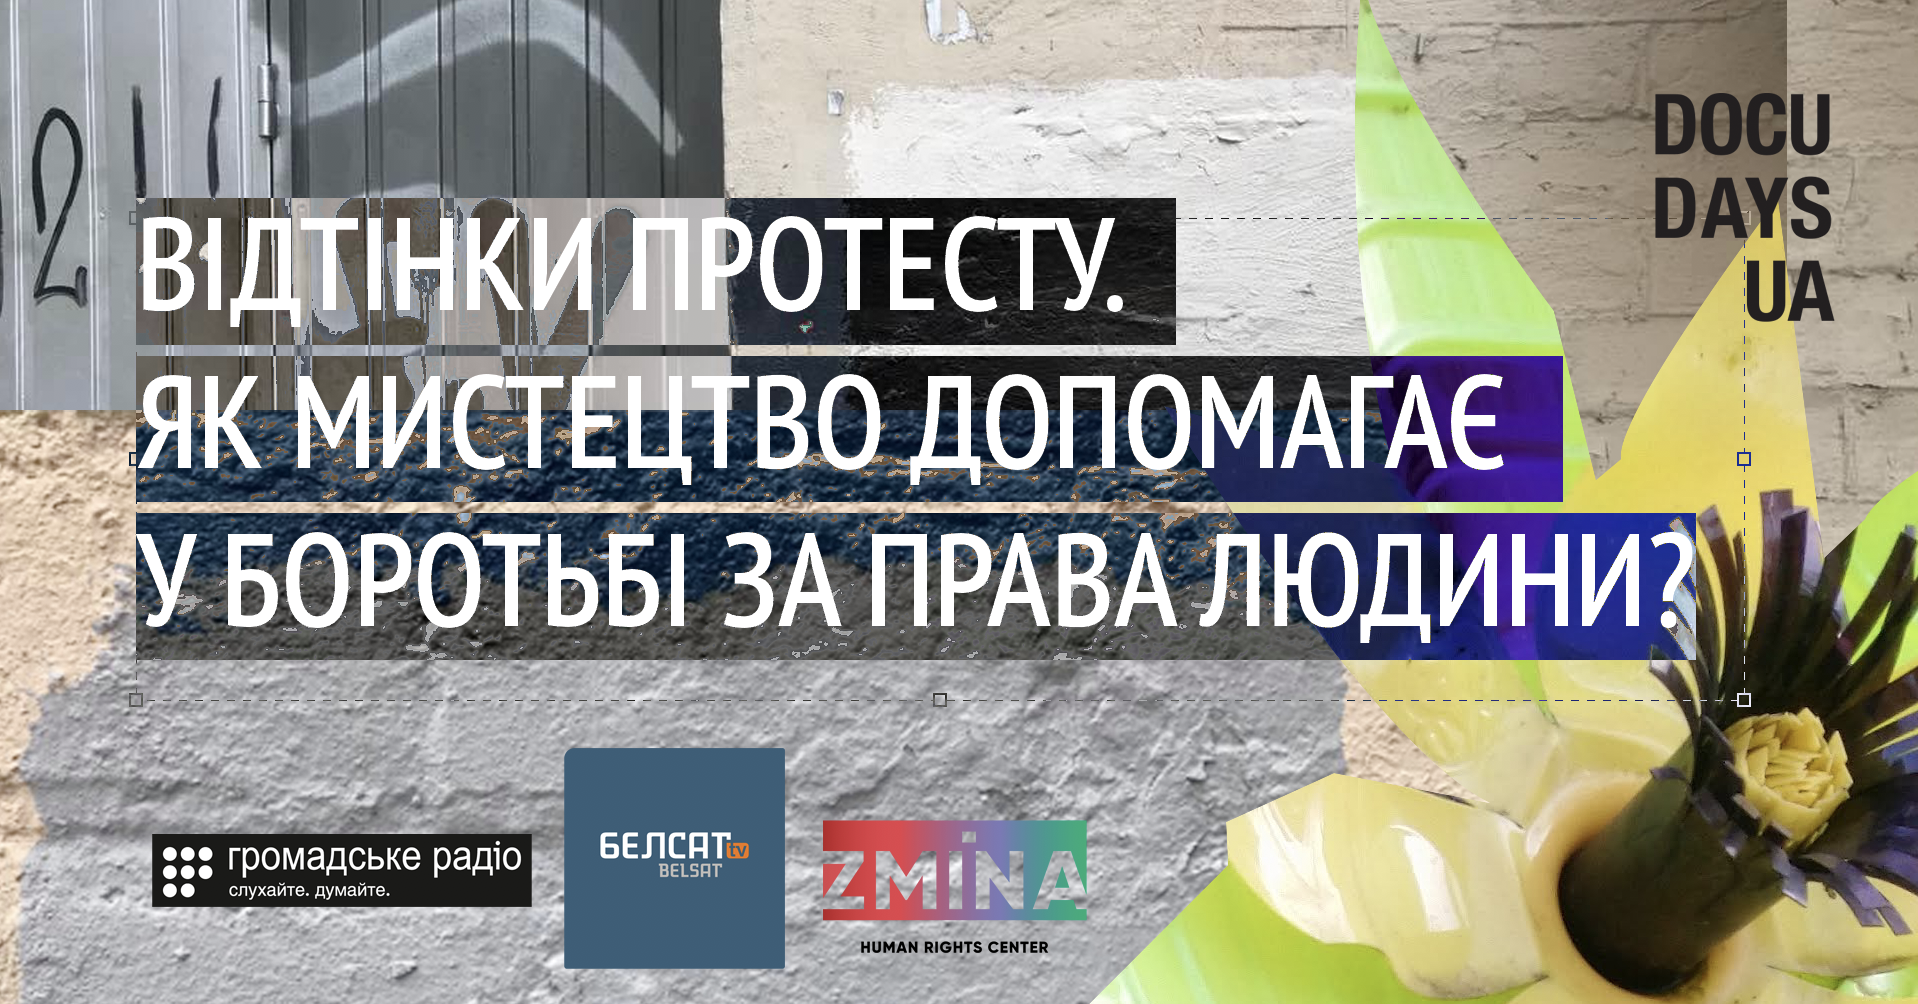 «Відтінки протесту: як мистецтво допомагає у боротьбі за права людини?»: 14 серпня на Facebook Громадського радіо дискутуємо про Білорусь